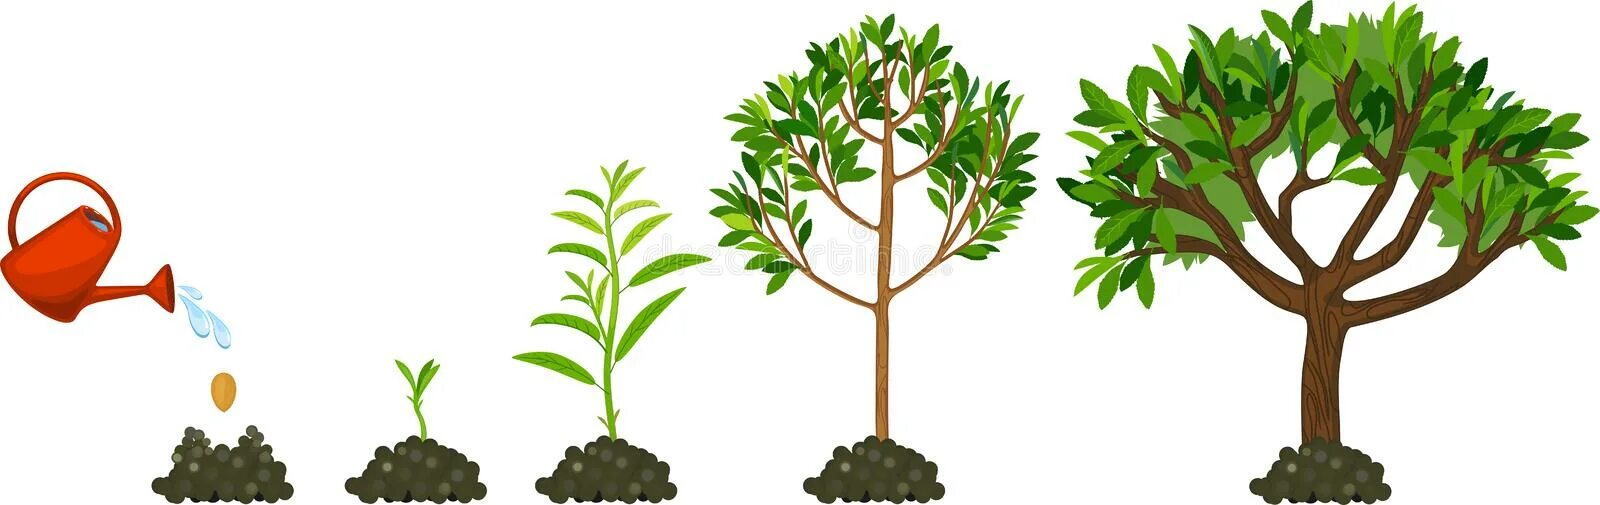 Какое деревце будет расти быстрее и развиваться. Этапы роста дерева. Рост дерева. Этапы поста дерева для дошкольников. Цикл роста дерева для детей.